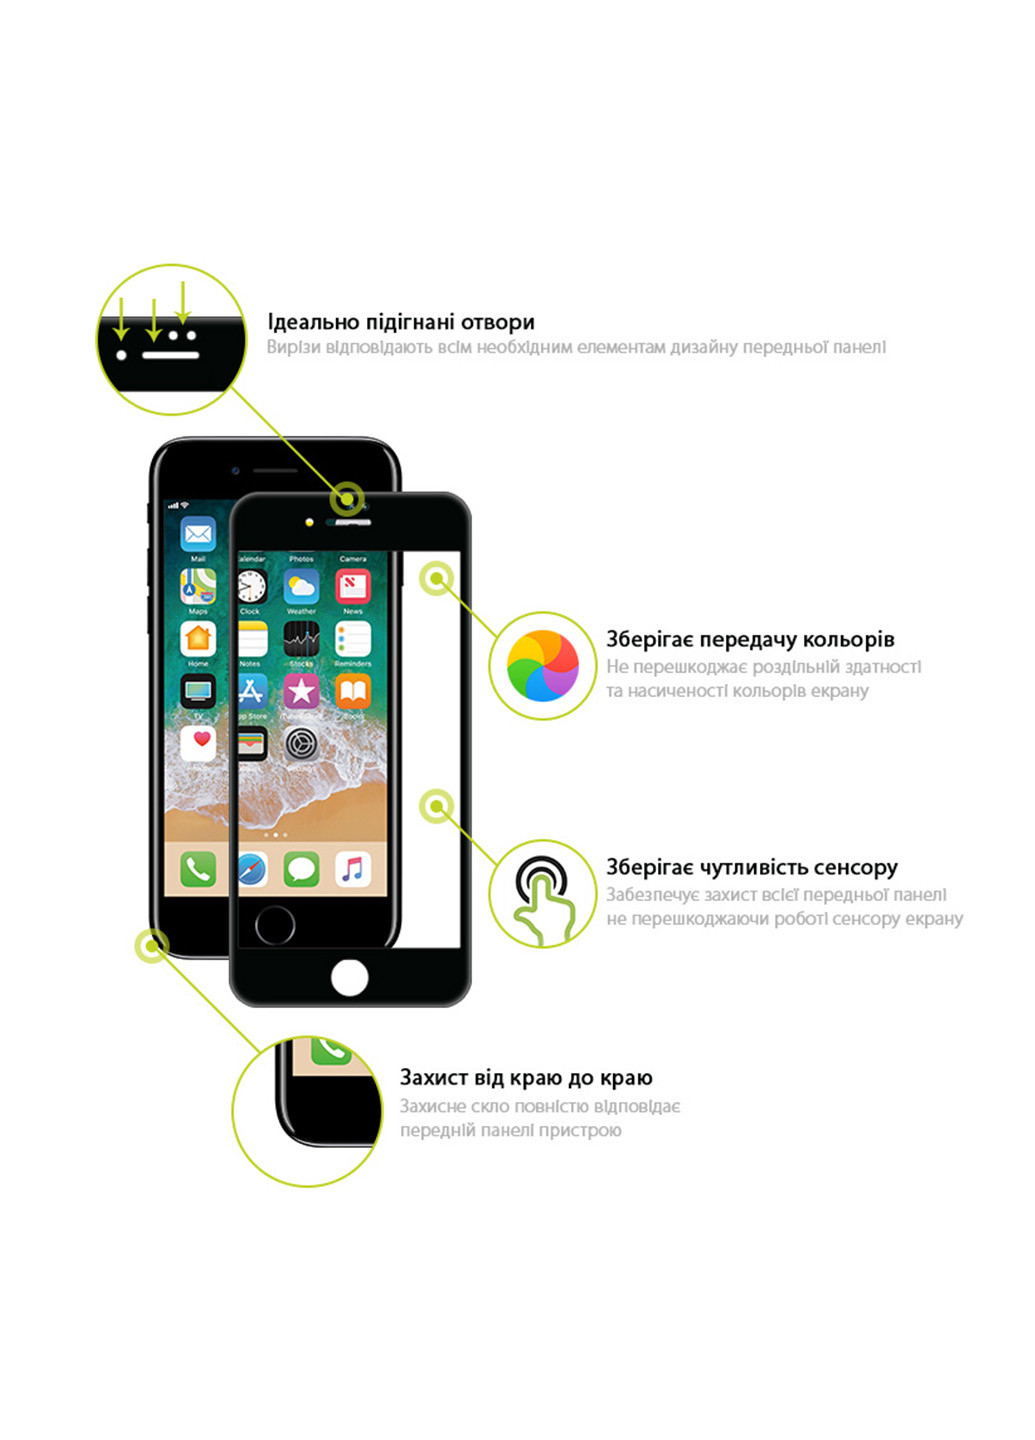 Защитное стекло Global tg full cover для apple iphone 7/8 (черное) (132540196)